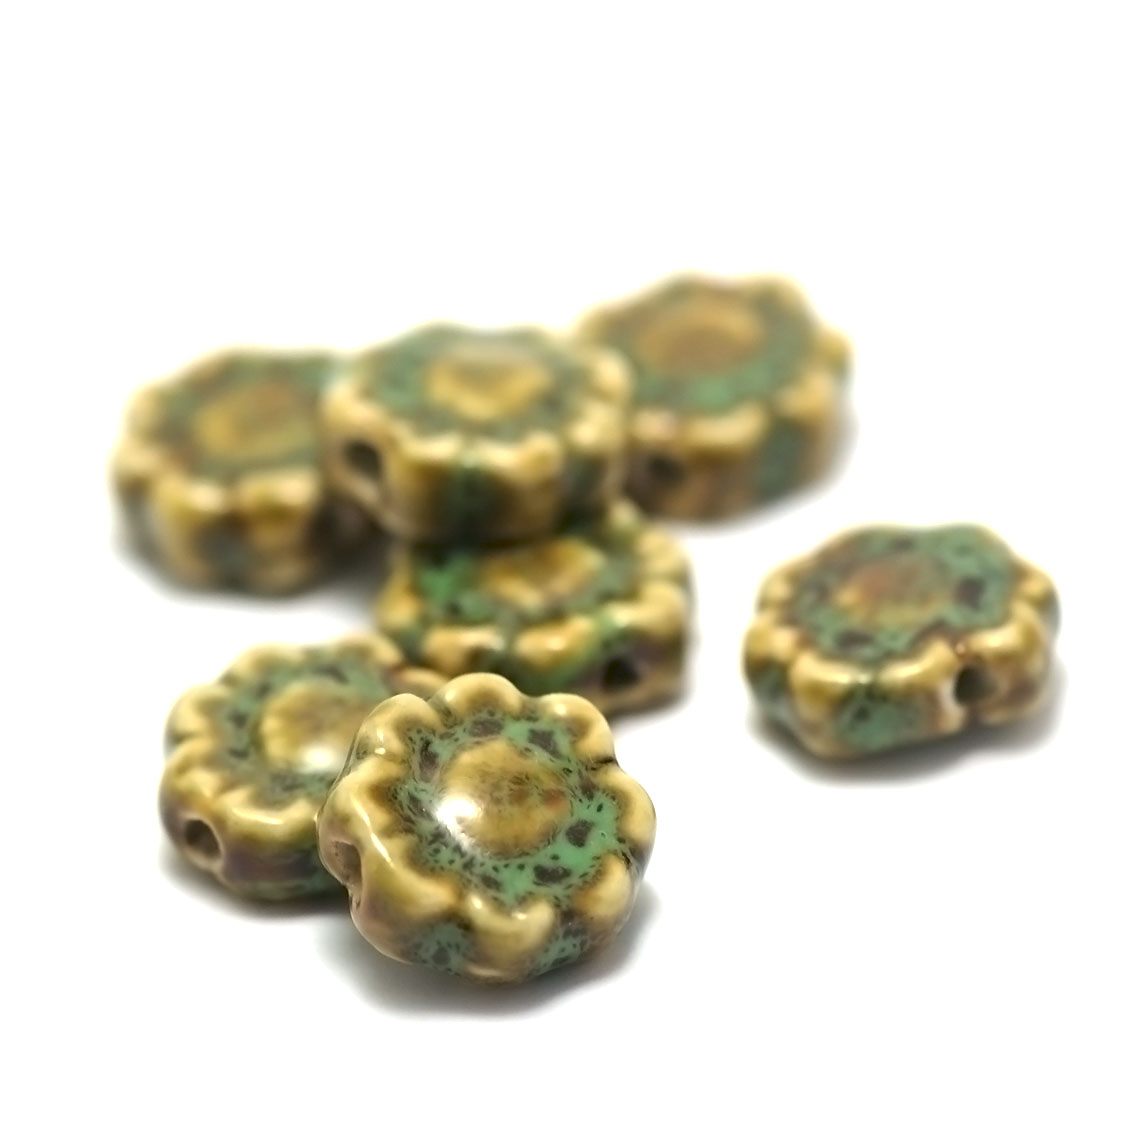 4 perles porcelaine/céramiques fleur 17x17x7 mm,vert jaune